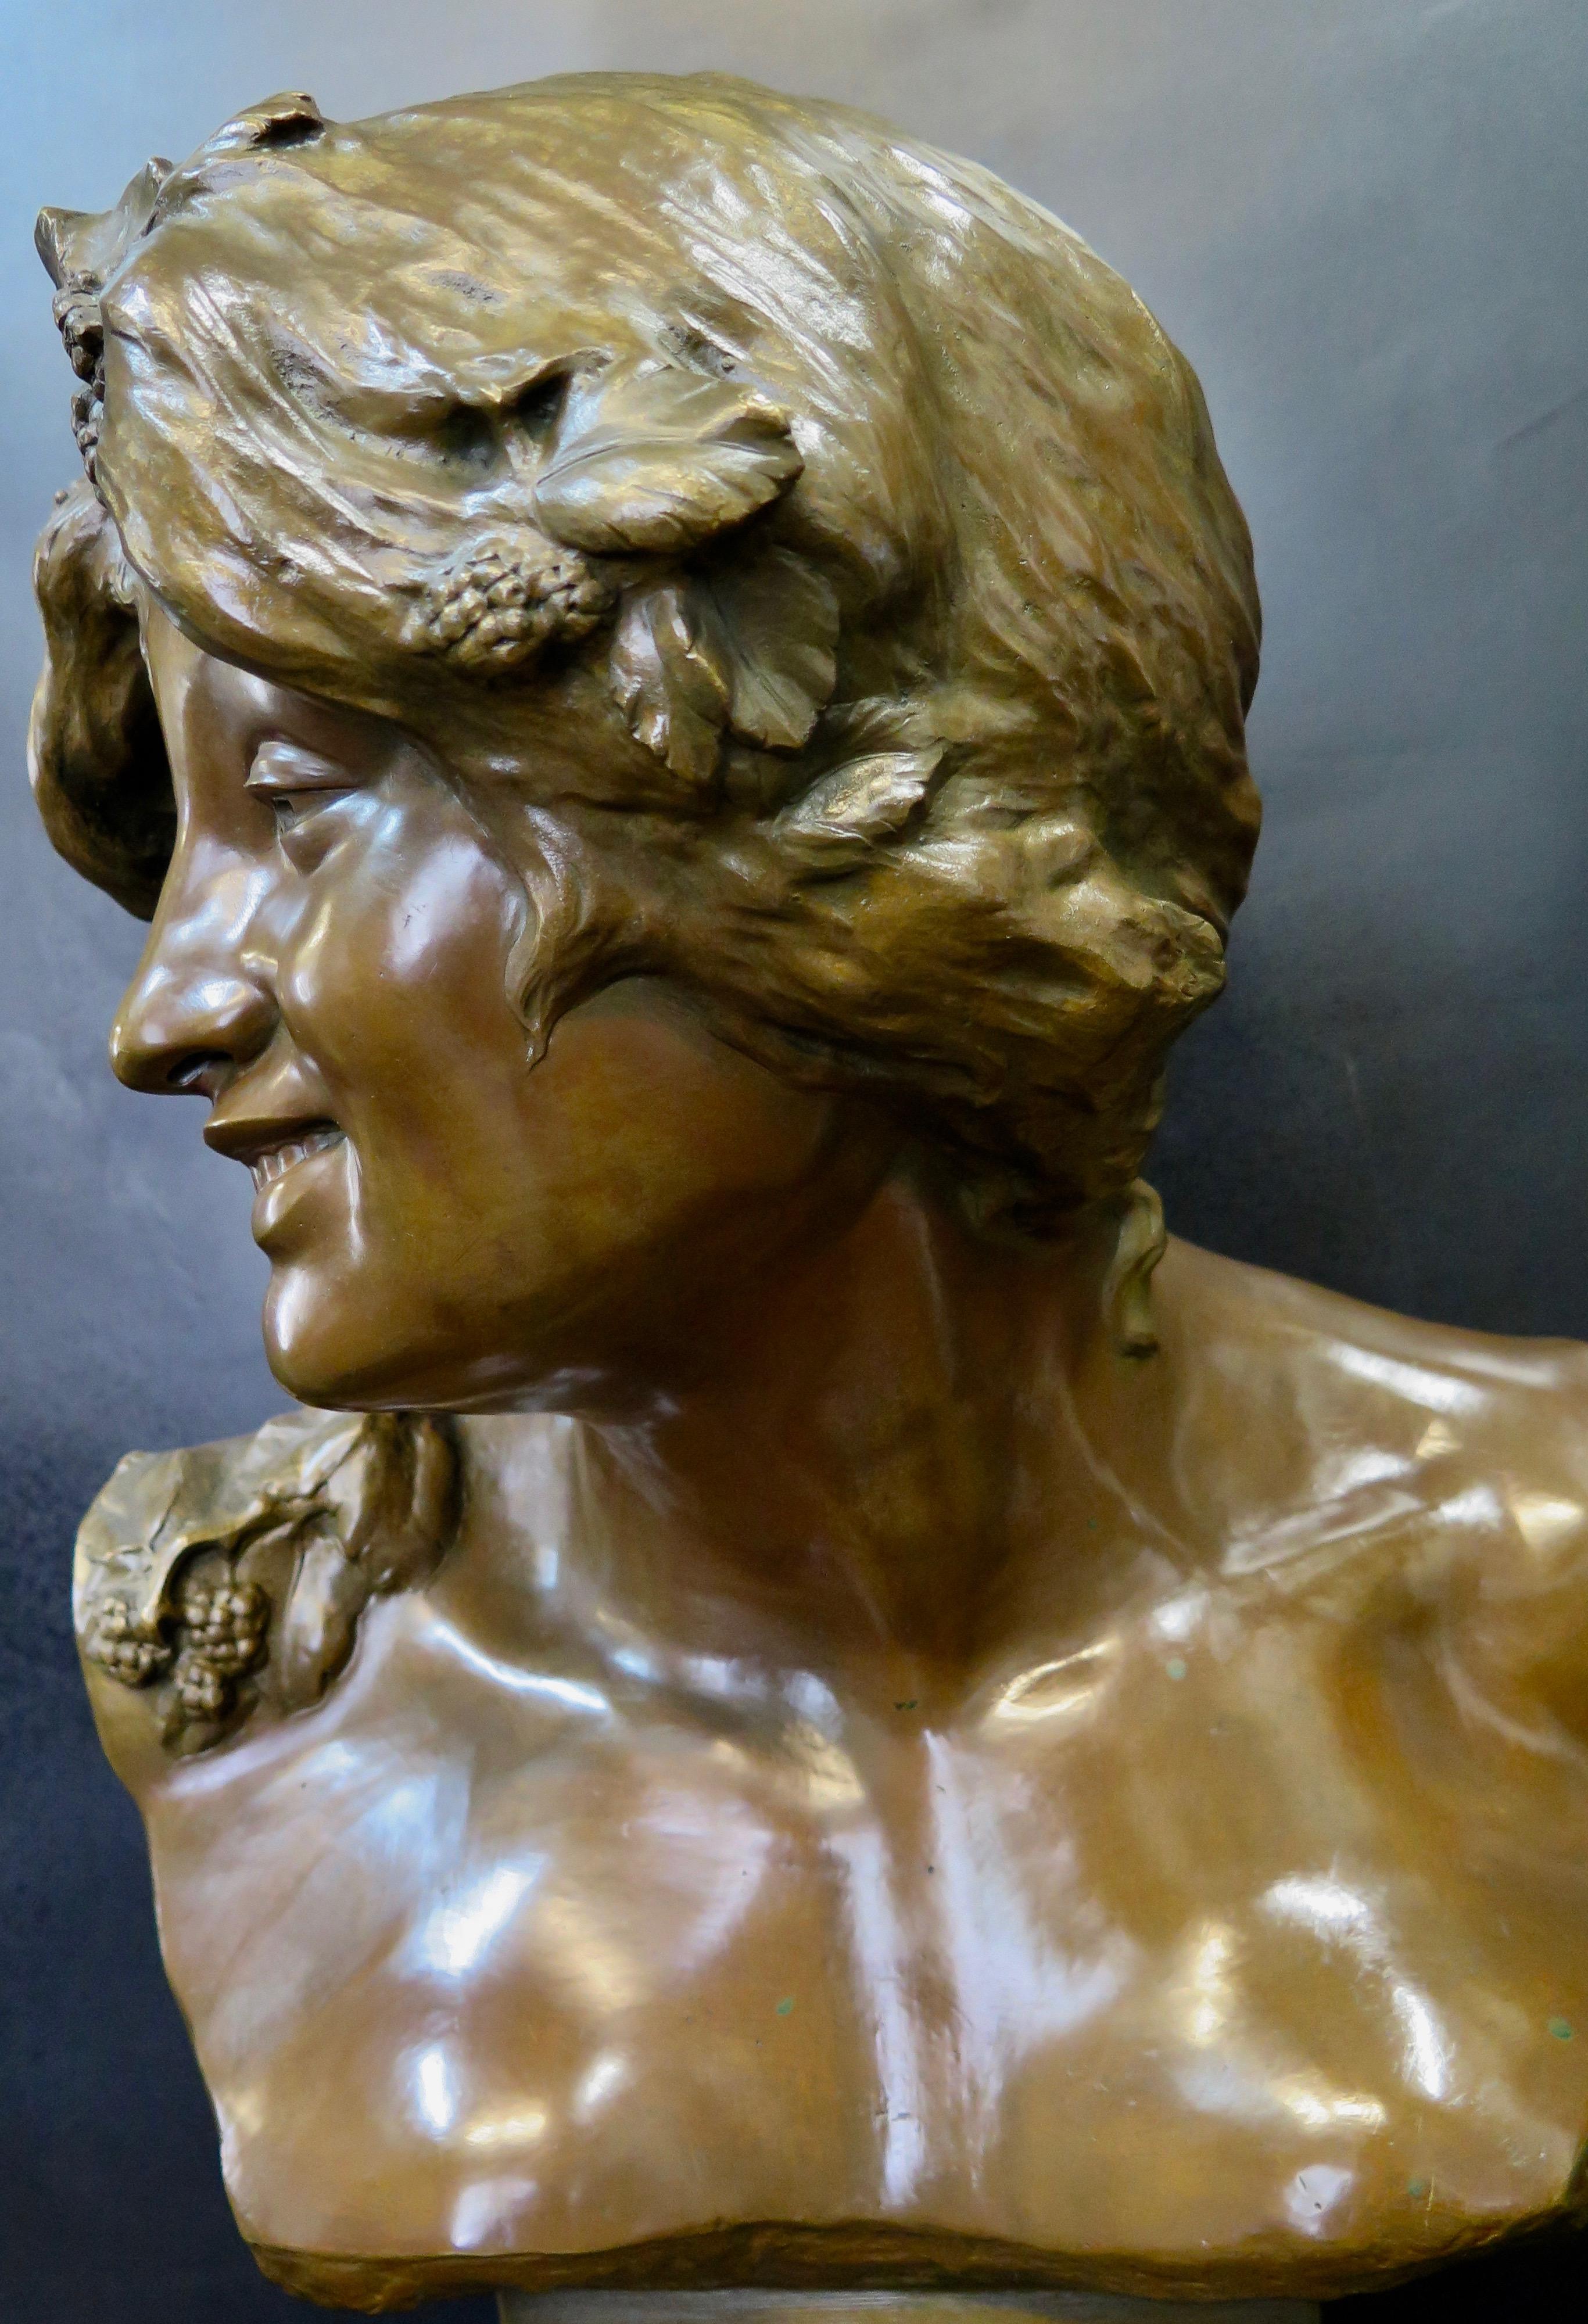 Cette œuvre d'art du 19e siècle est une sculpture en bronze patiné richement détaillée dans le style Art nouveau. Il représente la déesse Perséphone, reine des enfers, qui s'éveille de son sommeil terrestre. Sa tête est ornée d'un bandeau floral. Le